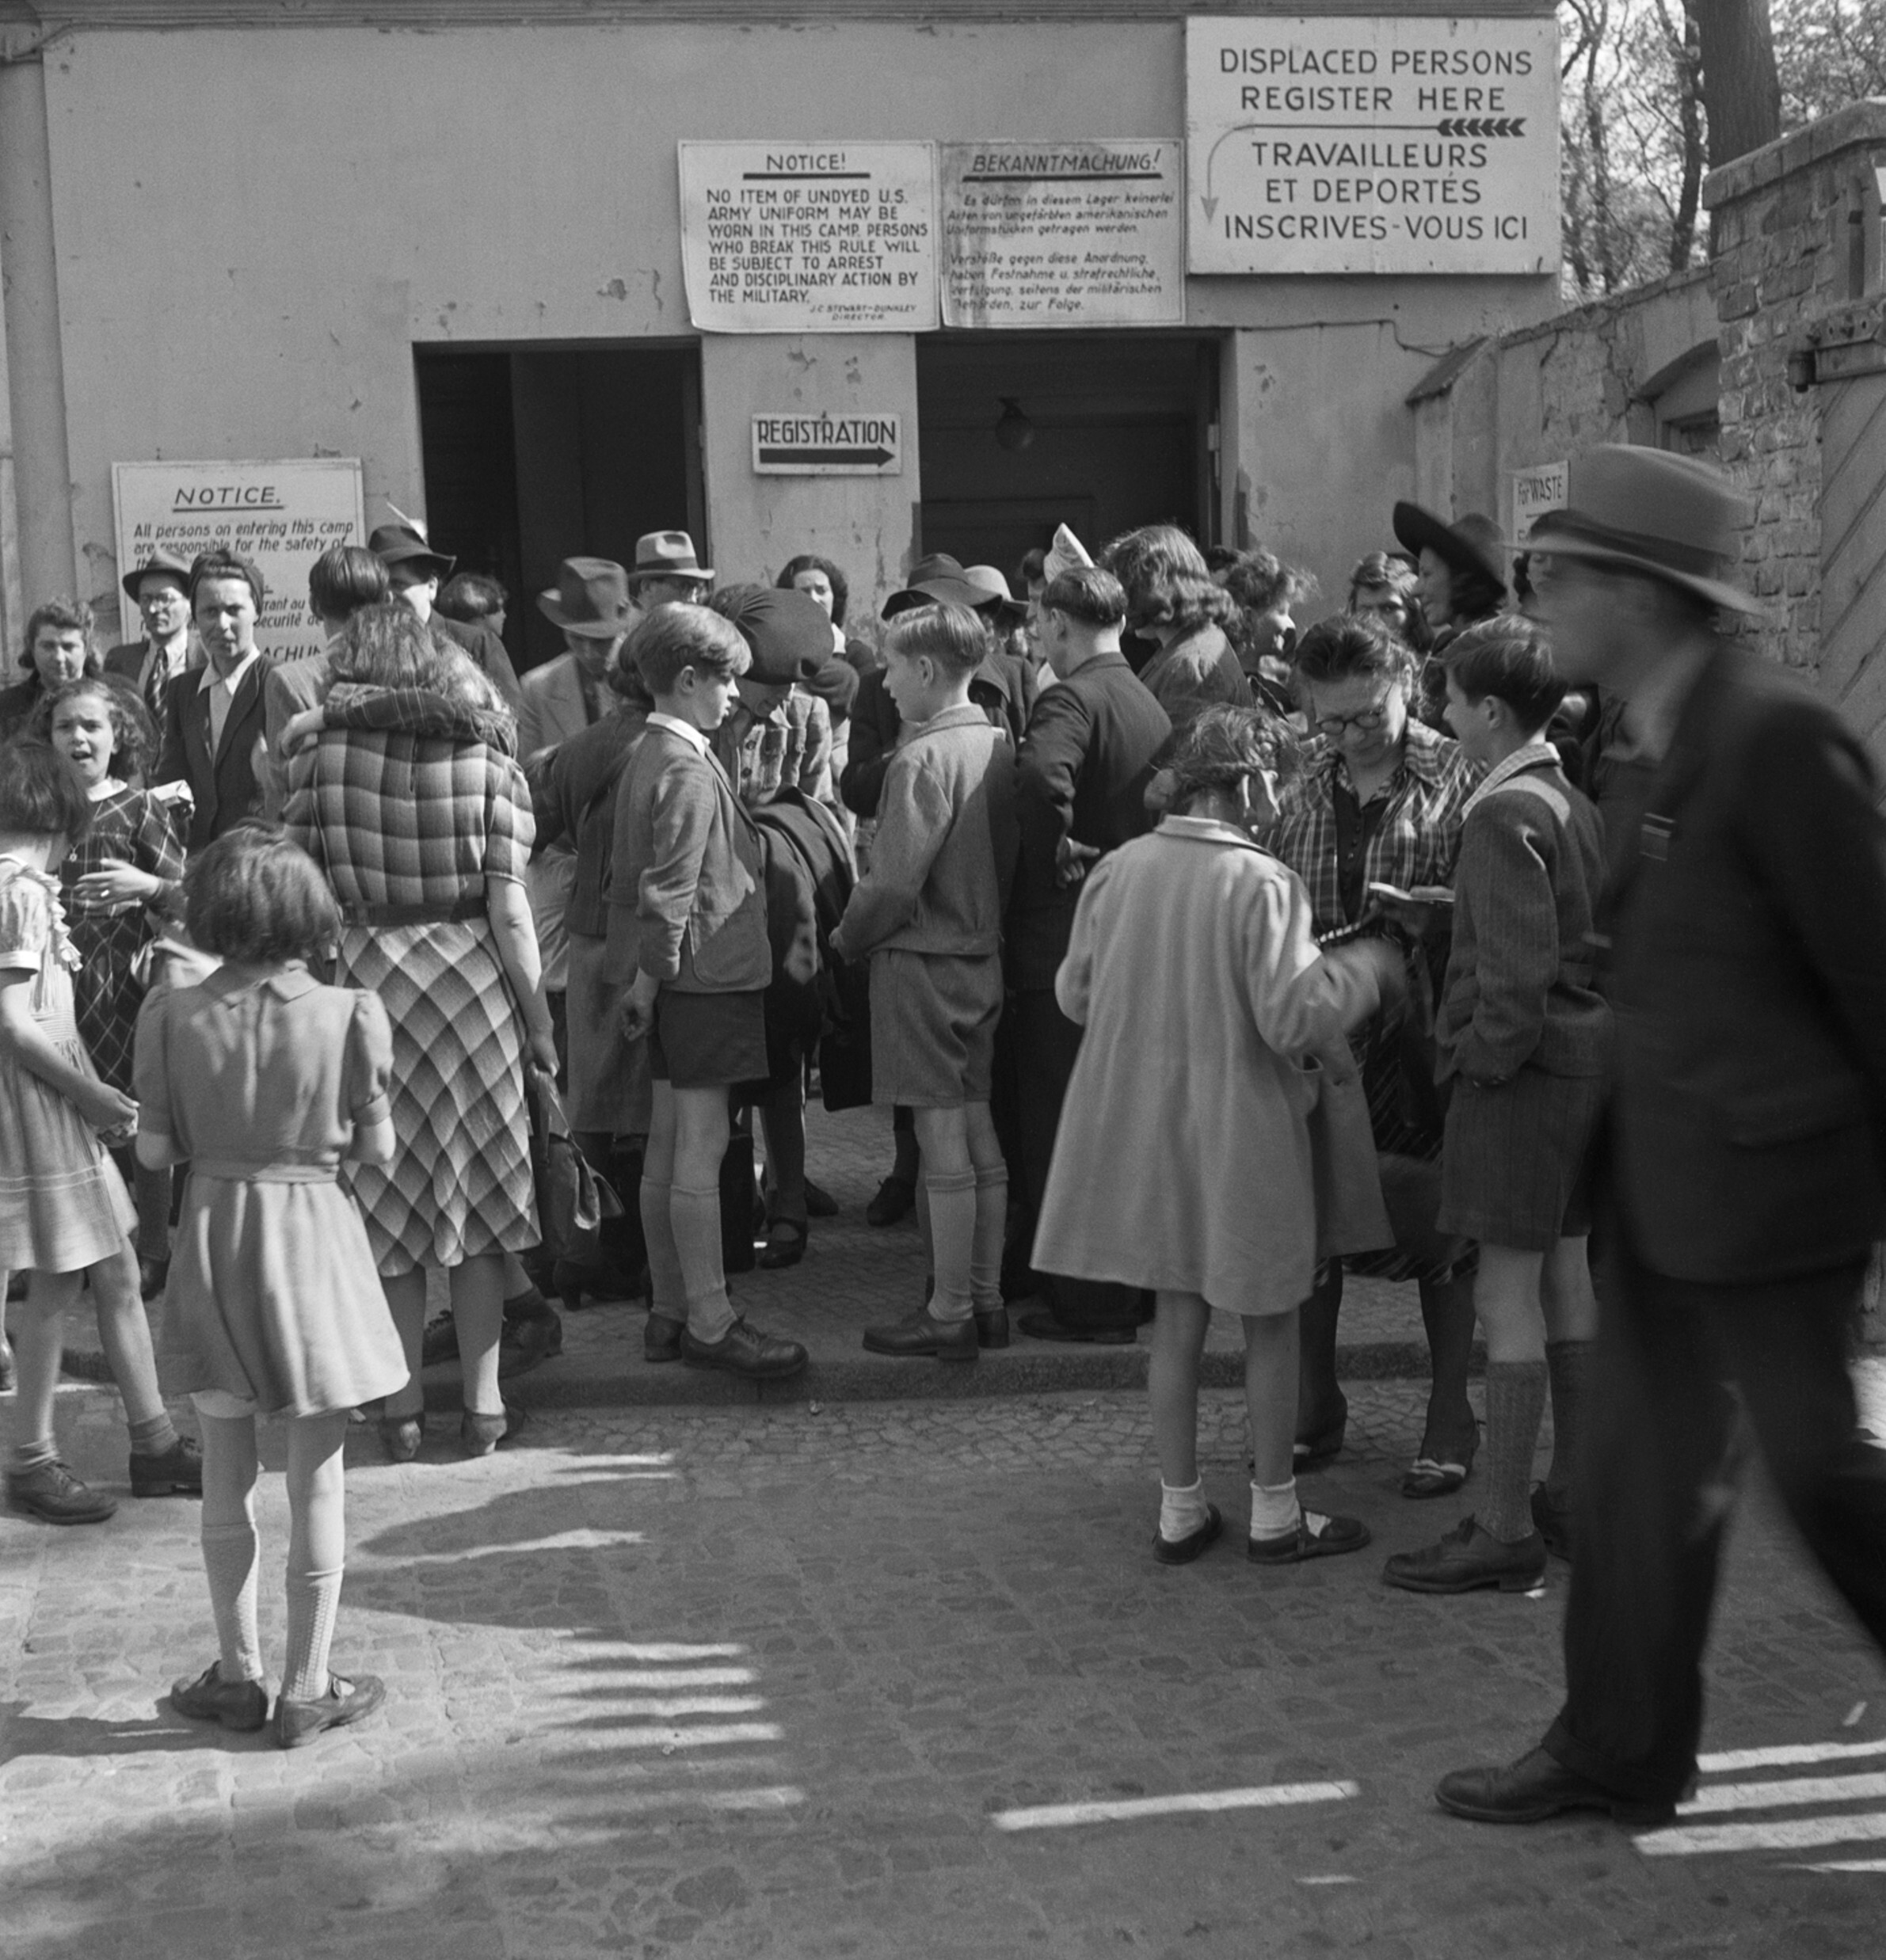 Беженцы толпятся у регистрационного бюро транзитного бюро, лагерь для перемещенных лиц Шлахтензее, Целендорф, Берлин, 1947 год. Фотограф Роман Вишняк